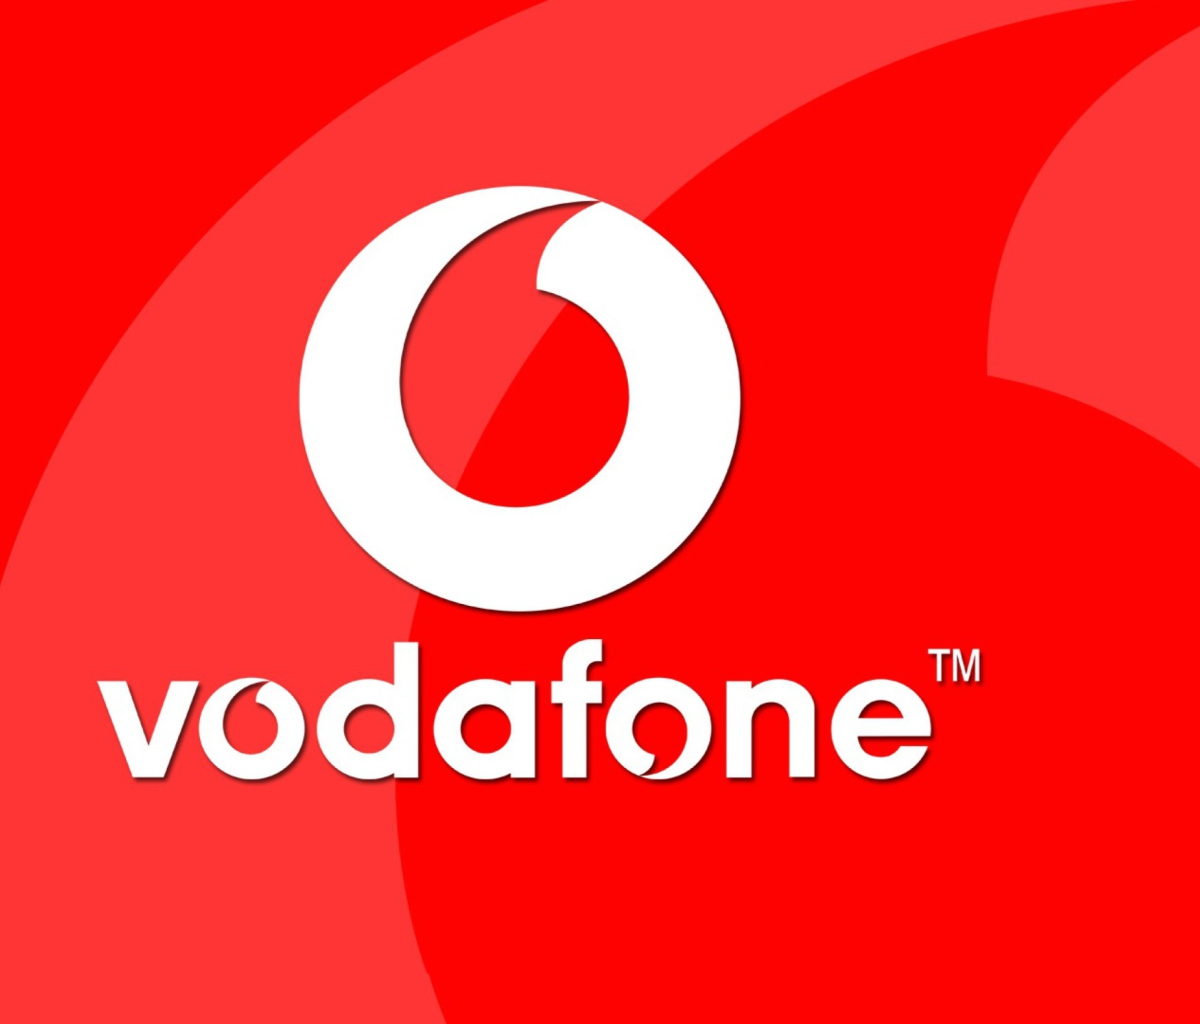 Das Vodafone Logo Wallpaper 1200x1024